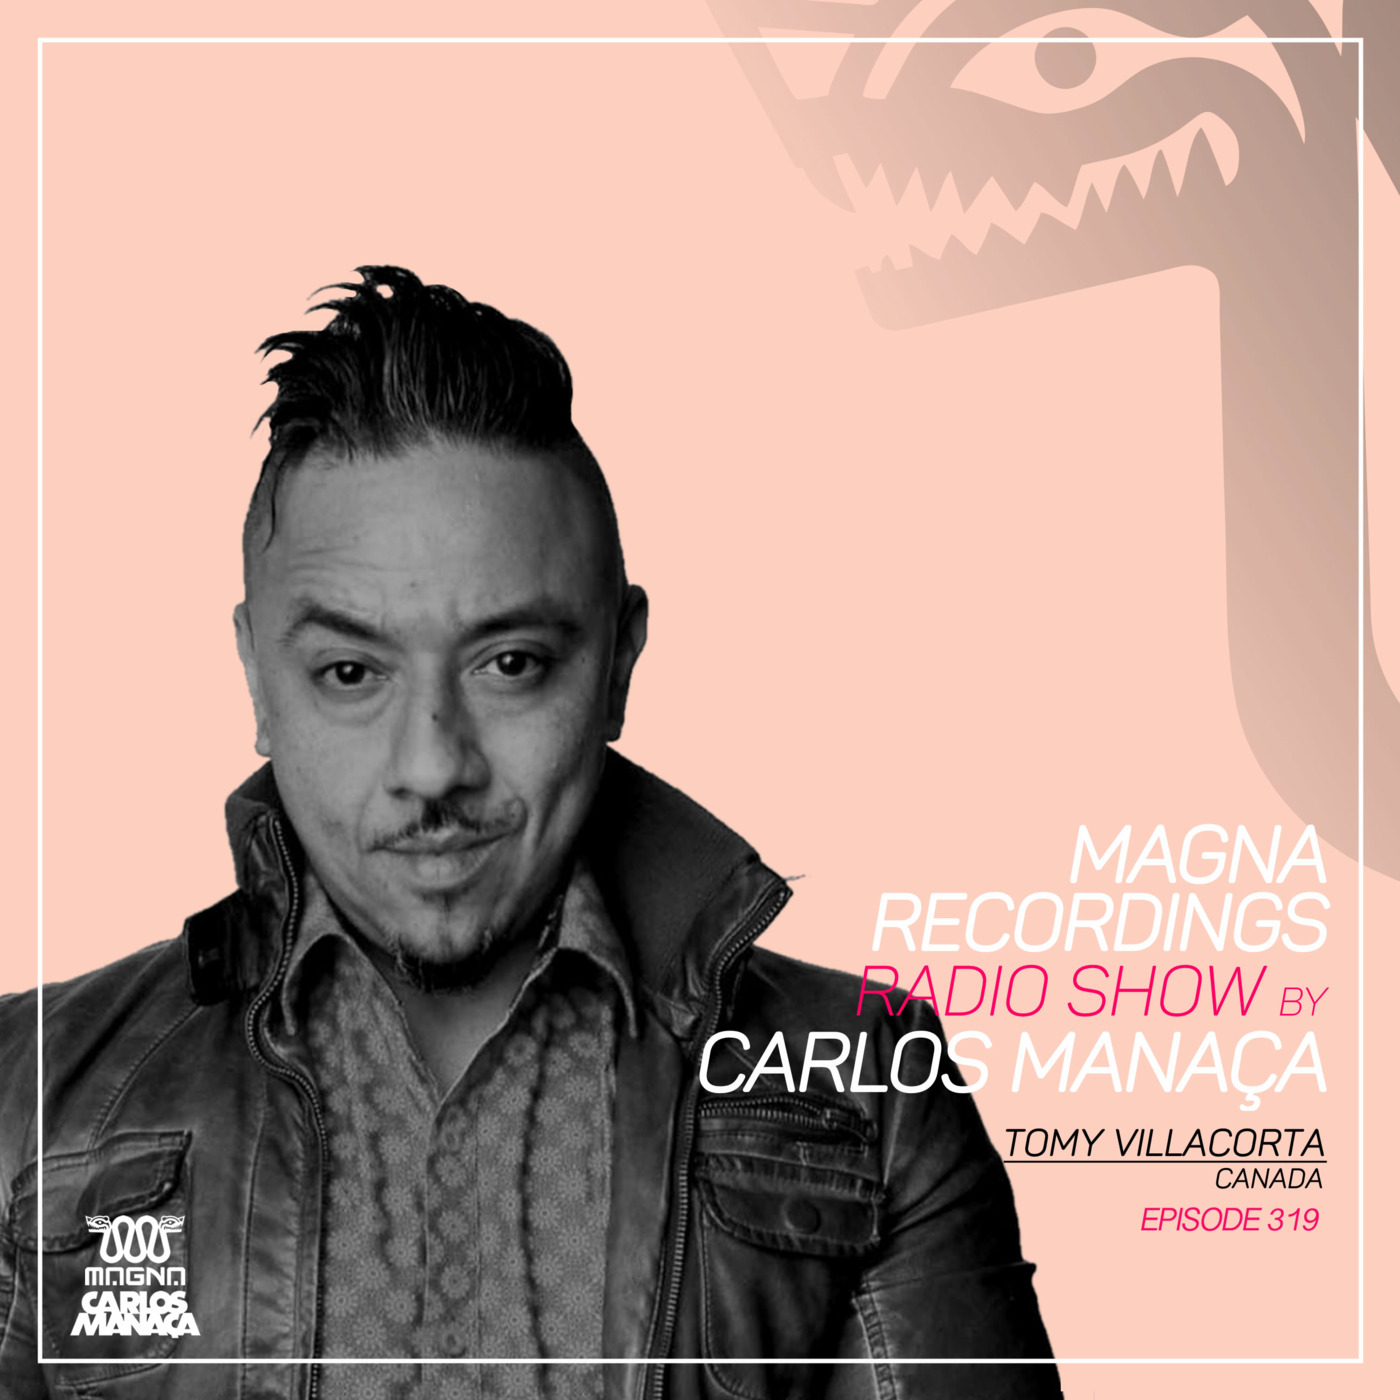 Episode 142: Magna Recordings Radio Show by Carlos Manaca 319 | Tomy Villacorta [Montreal] Canada